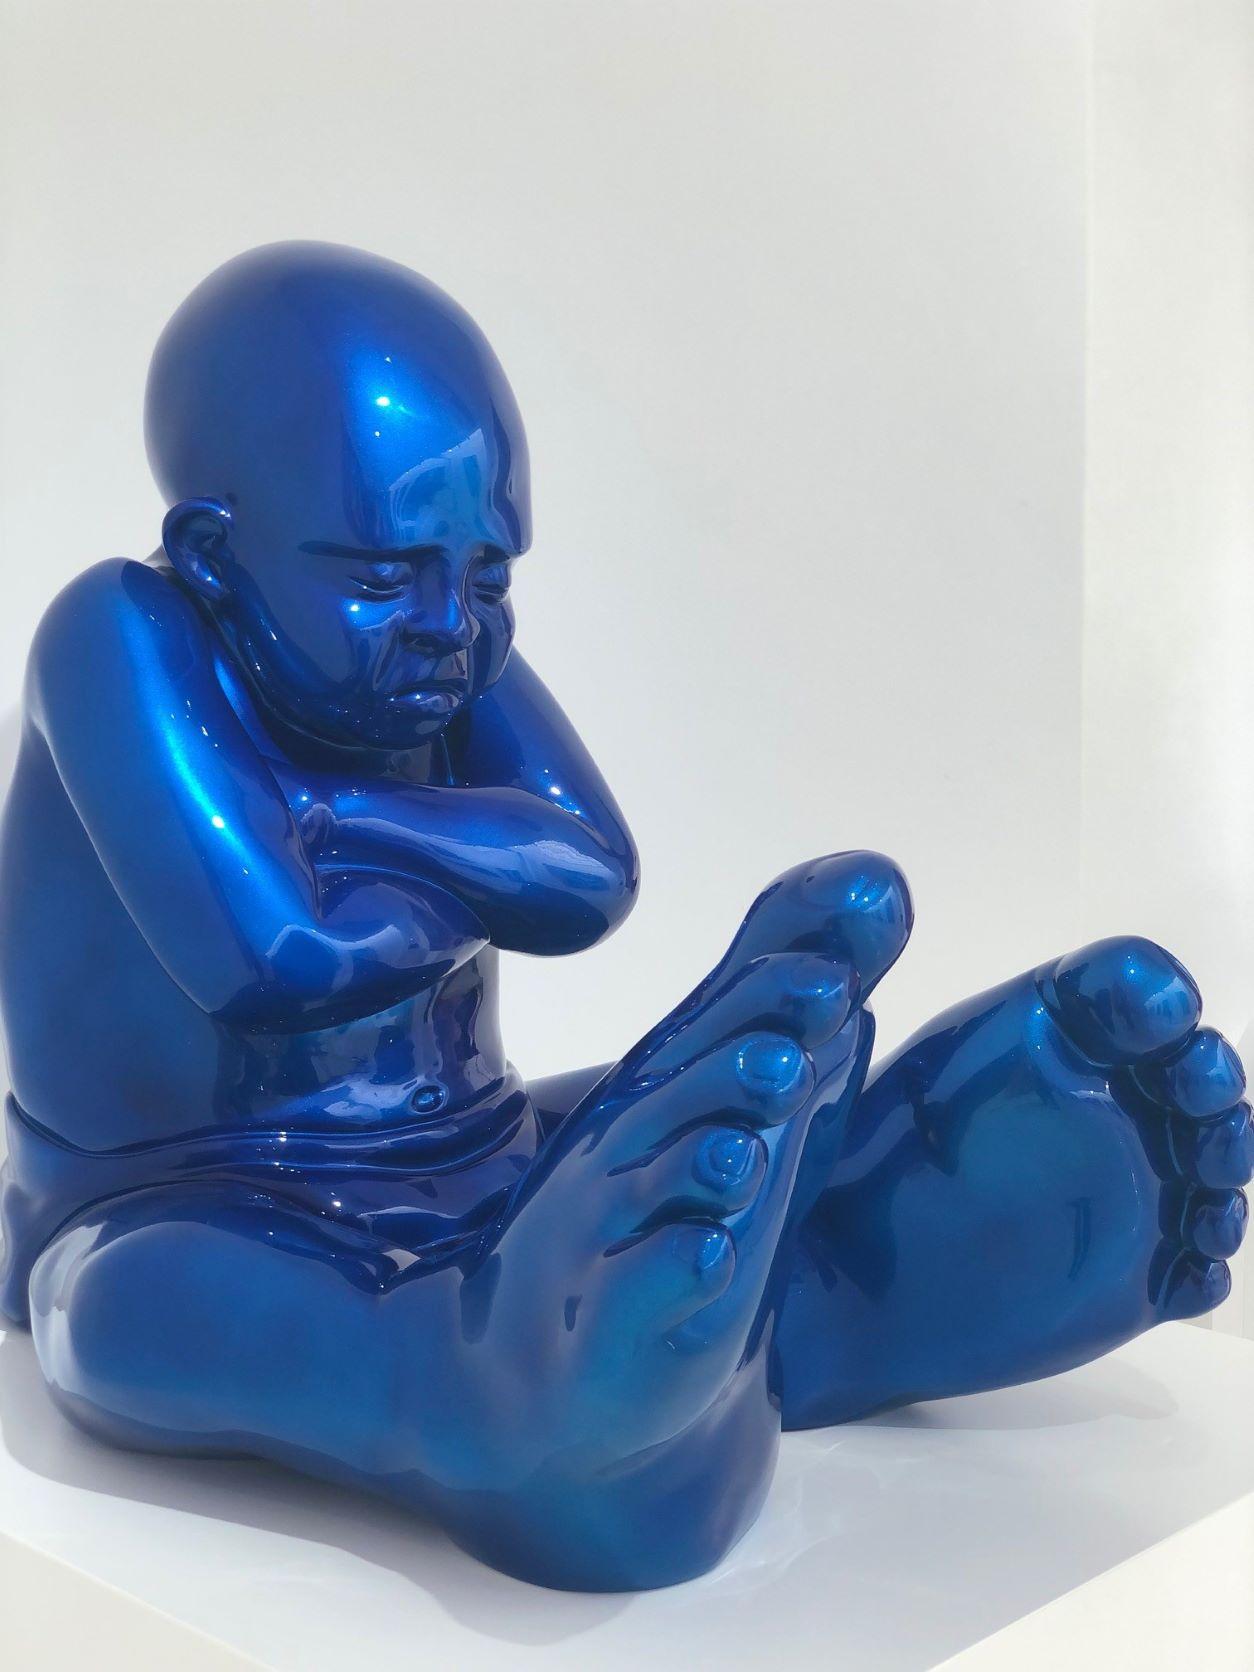 baby foot sculpture